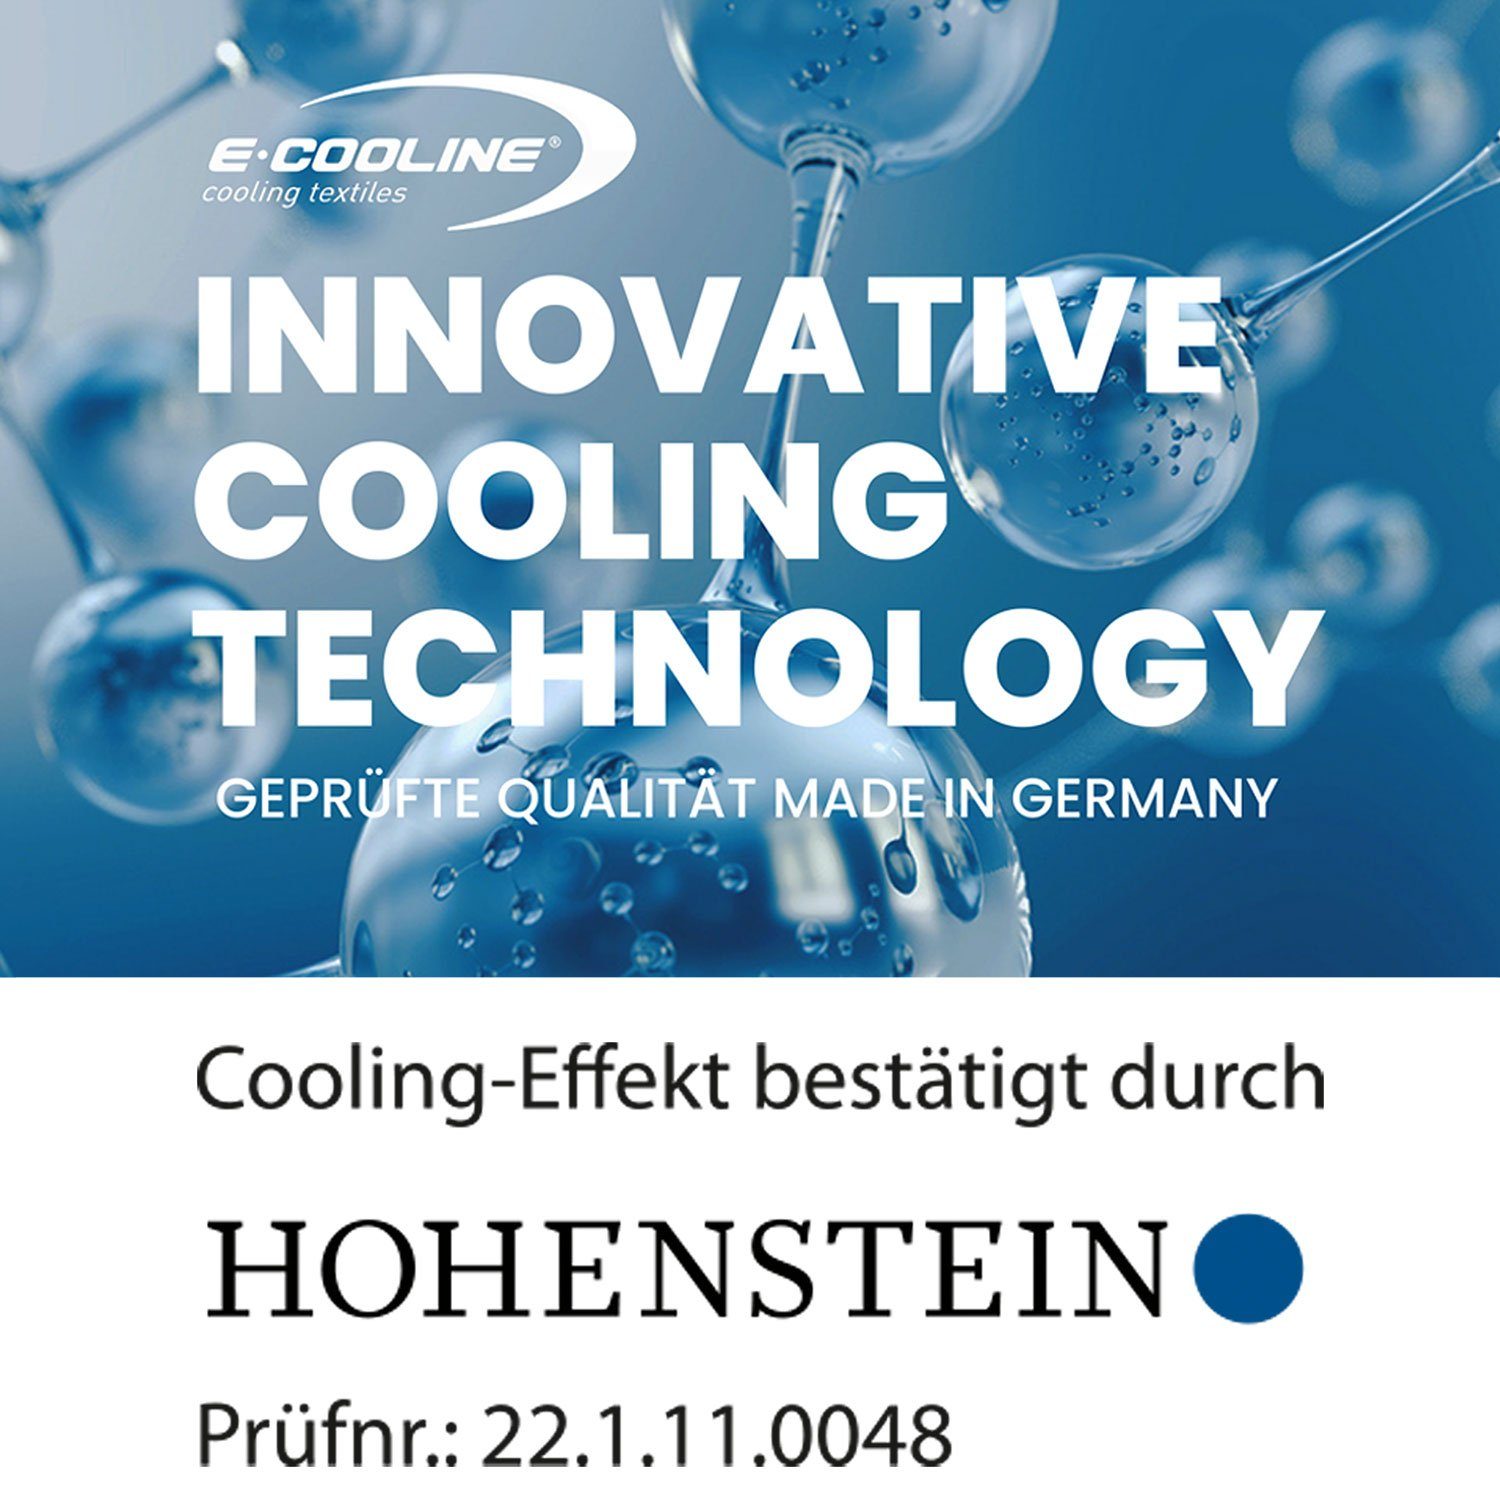 Paar Aktivierung mit SX3, zum aktiv Armstulpen durch Wasser - Klimaanlage Anziehen E.COOLINE kühlend, PowerArmCooler 1 Kühlung